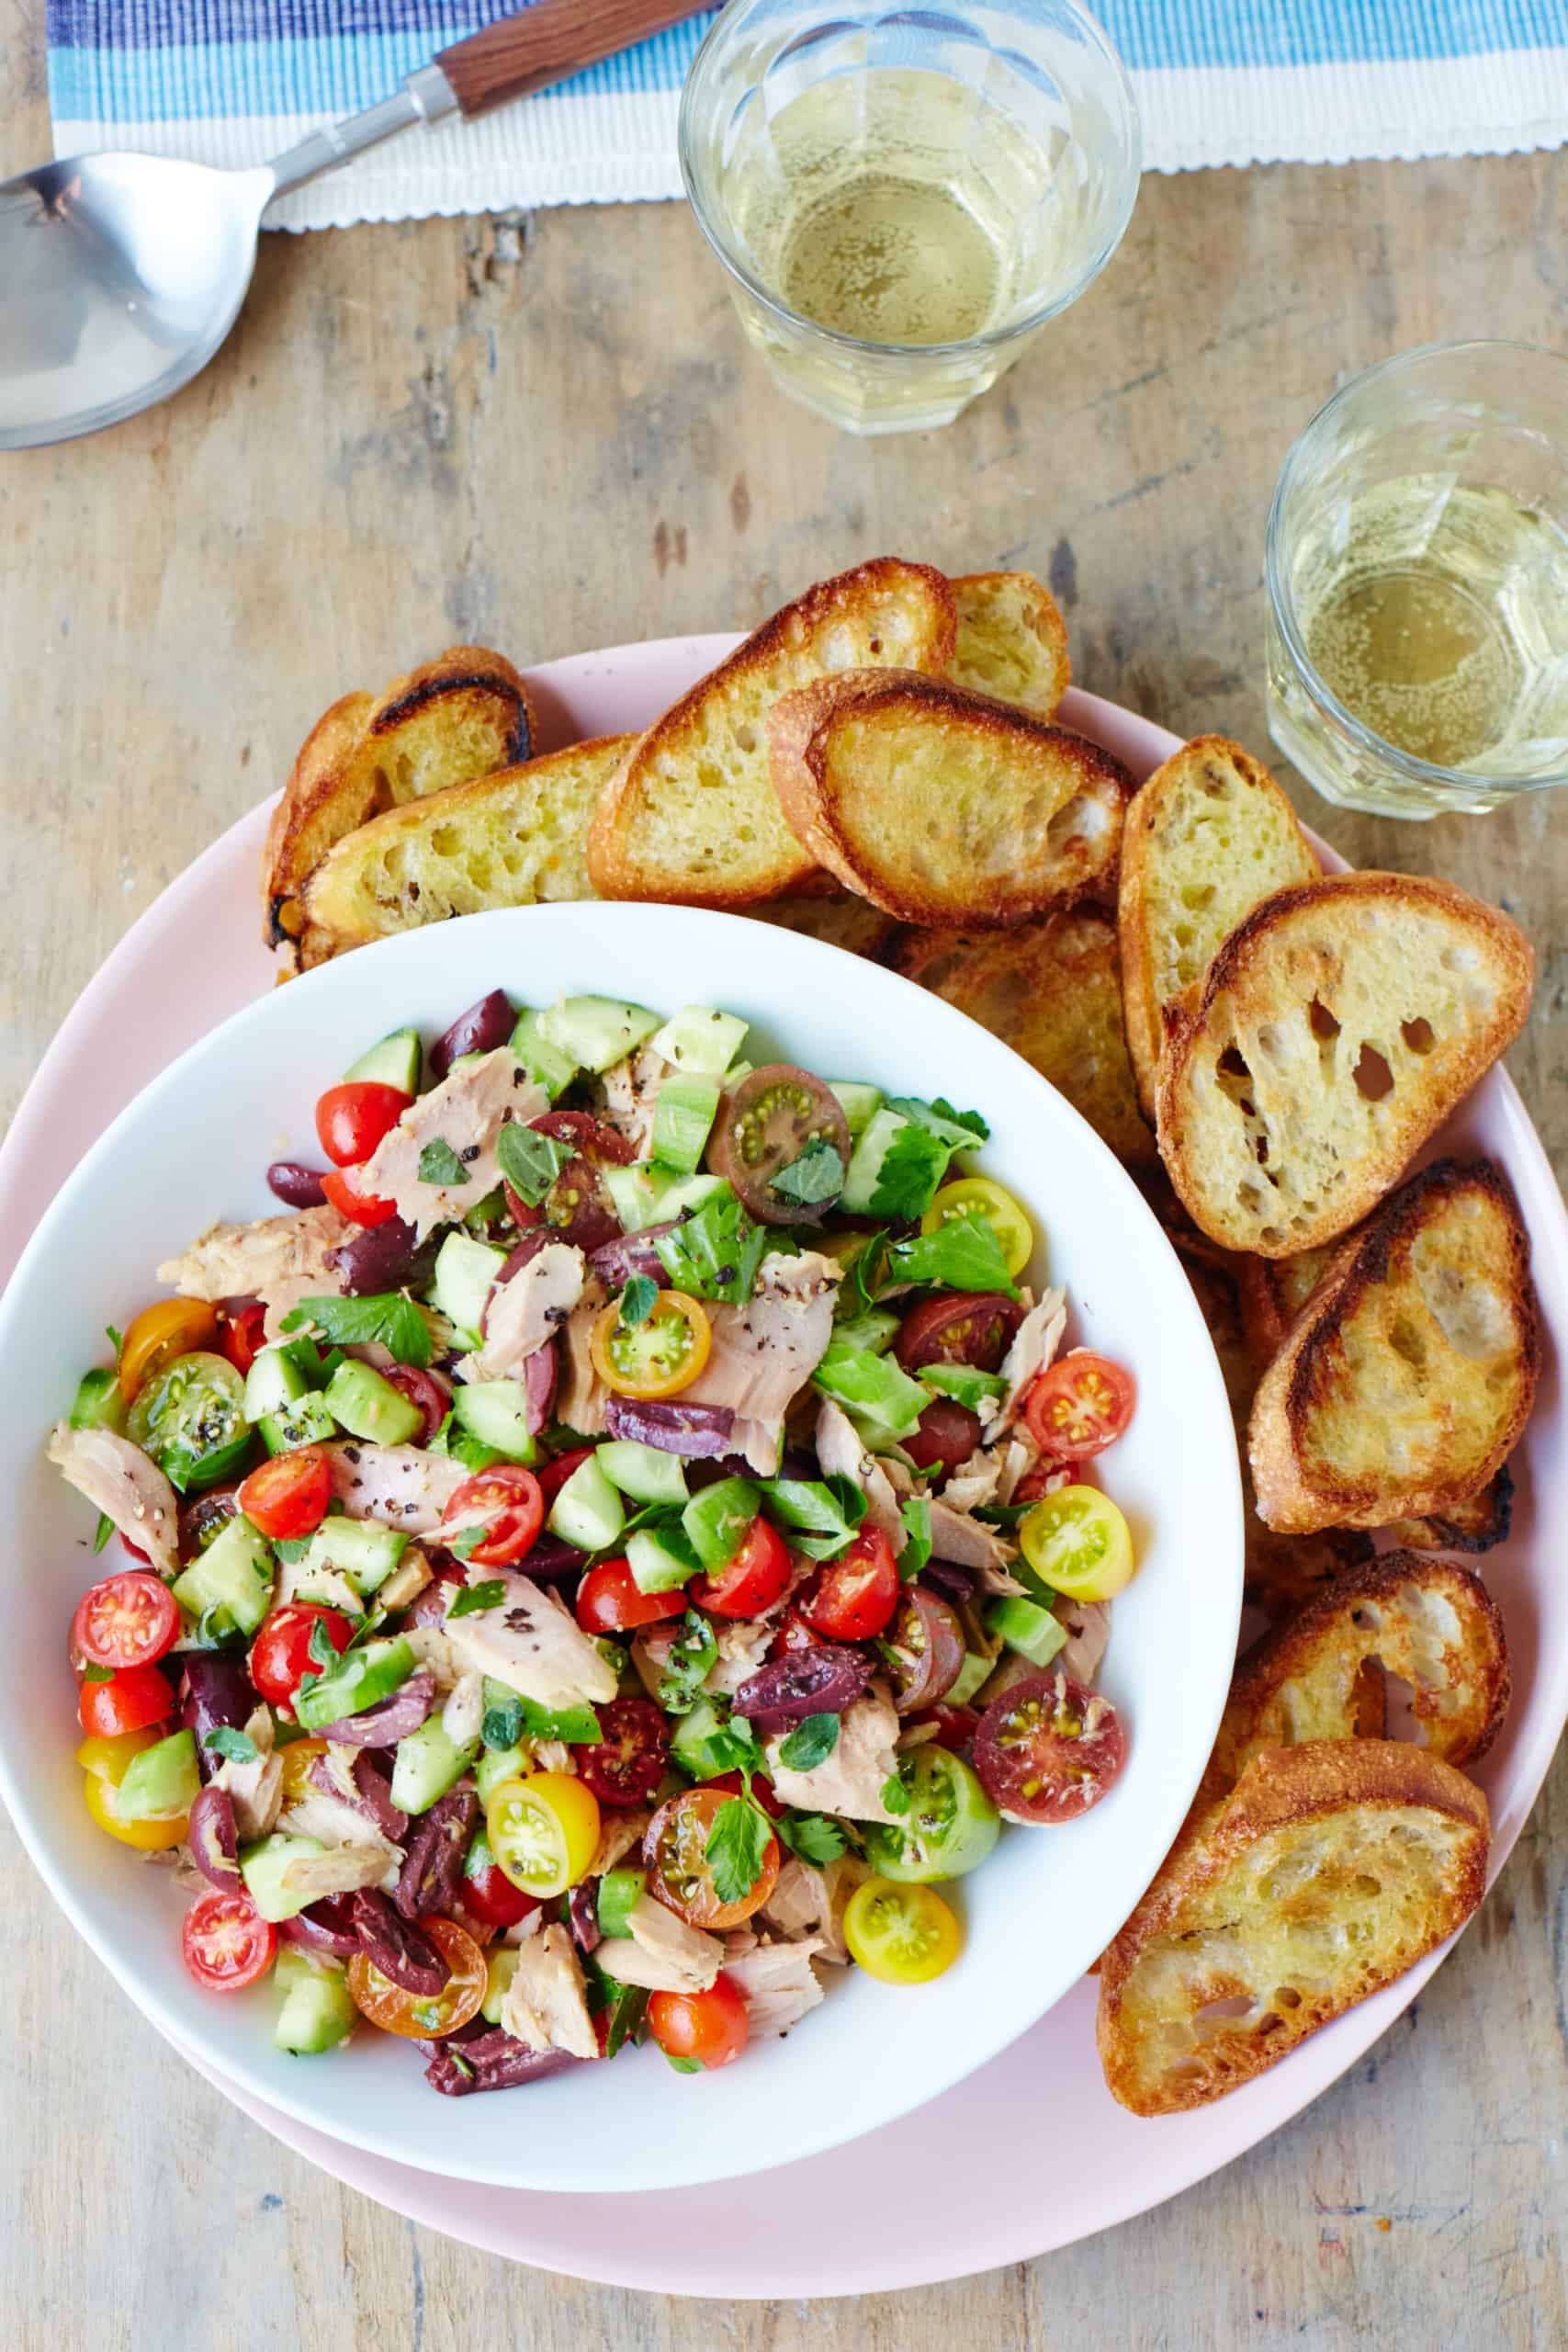 Greek Tuna Salad Recipe